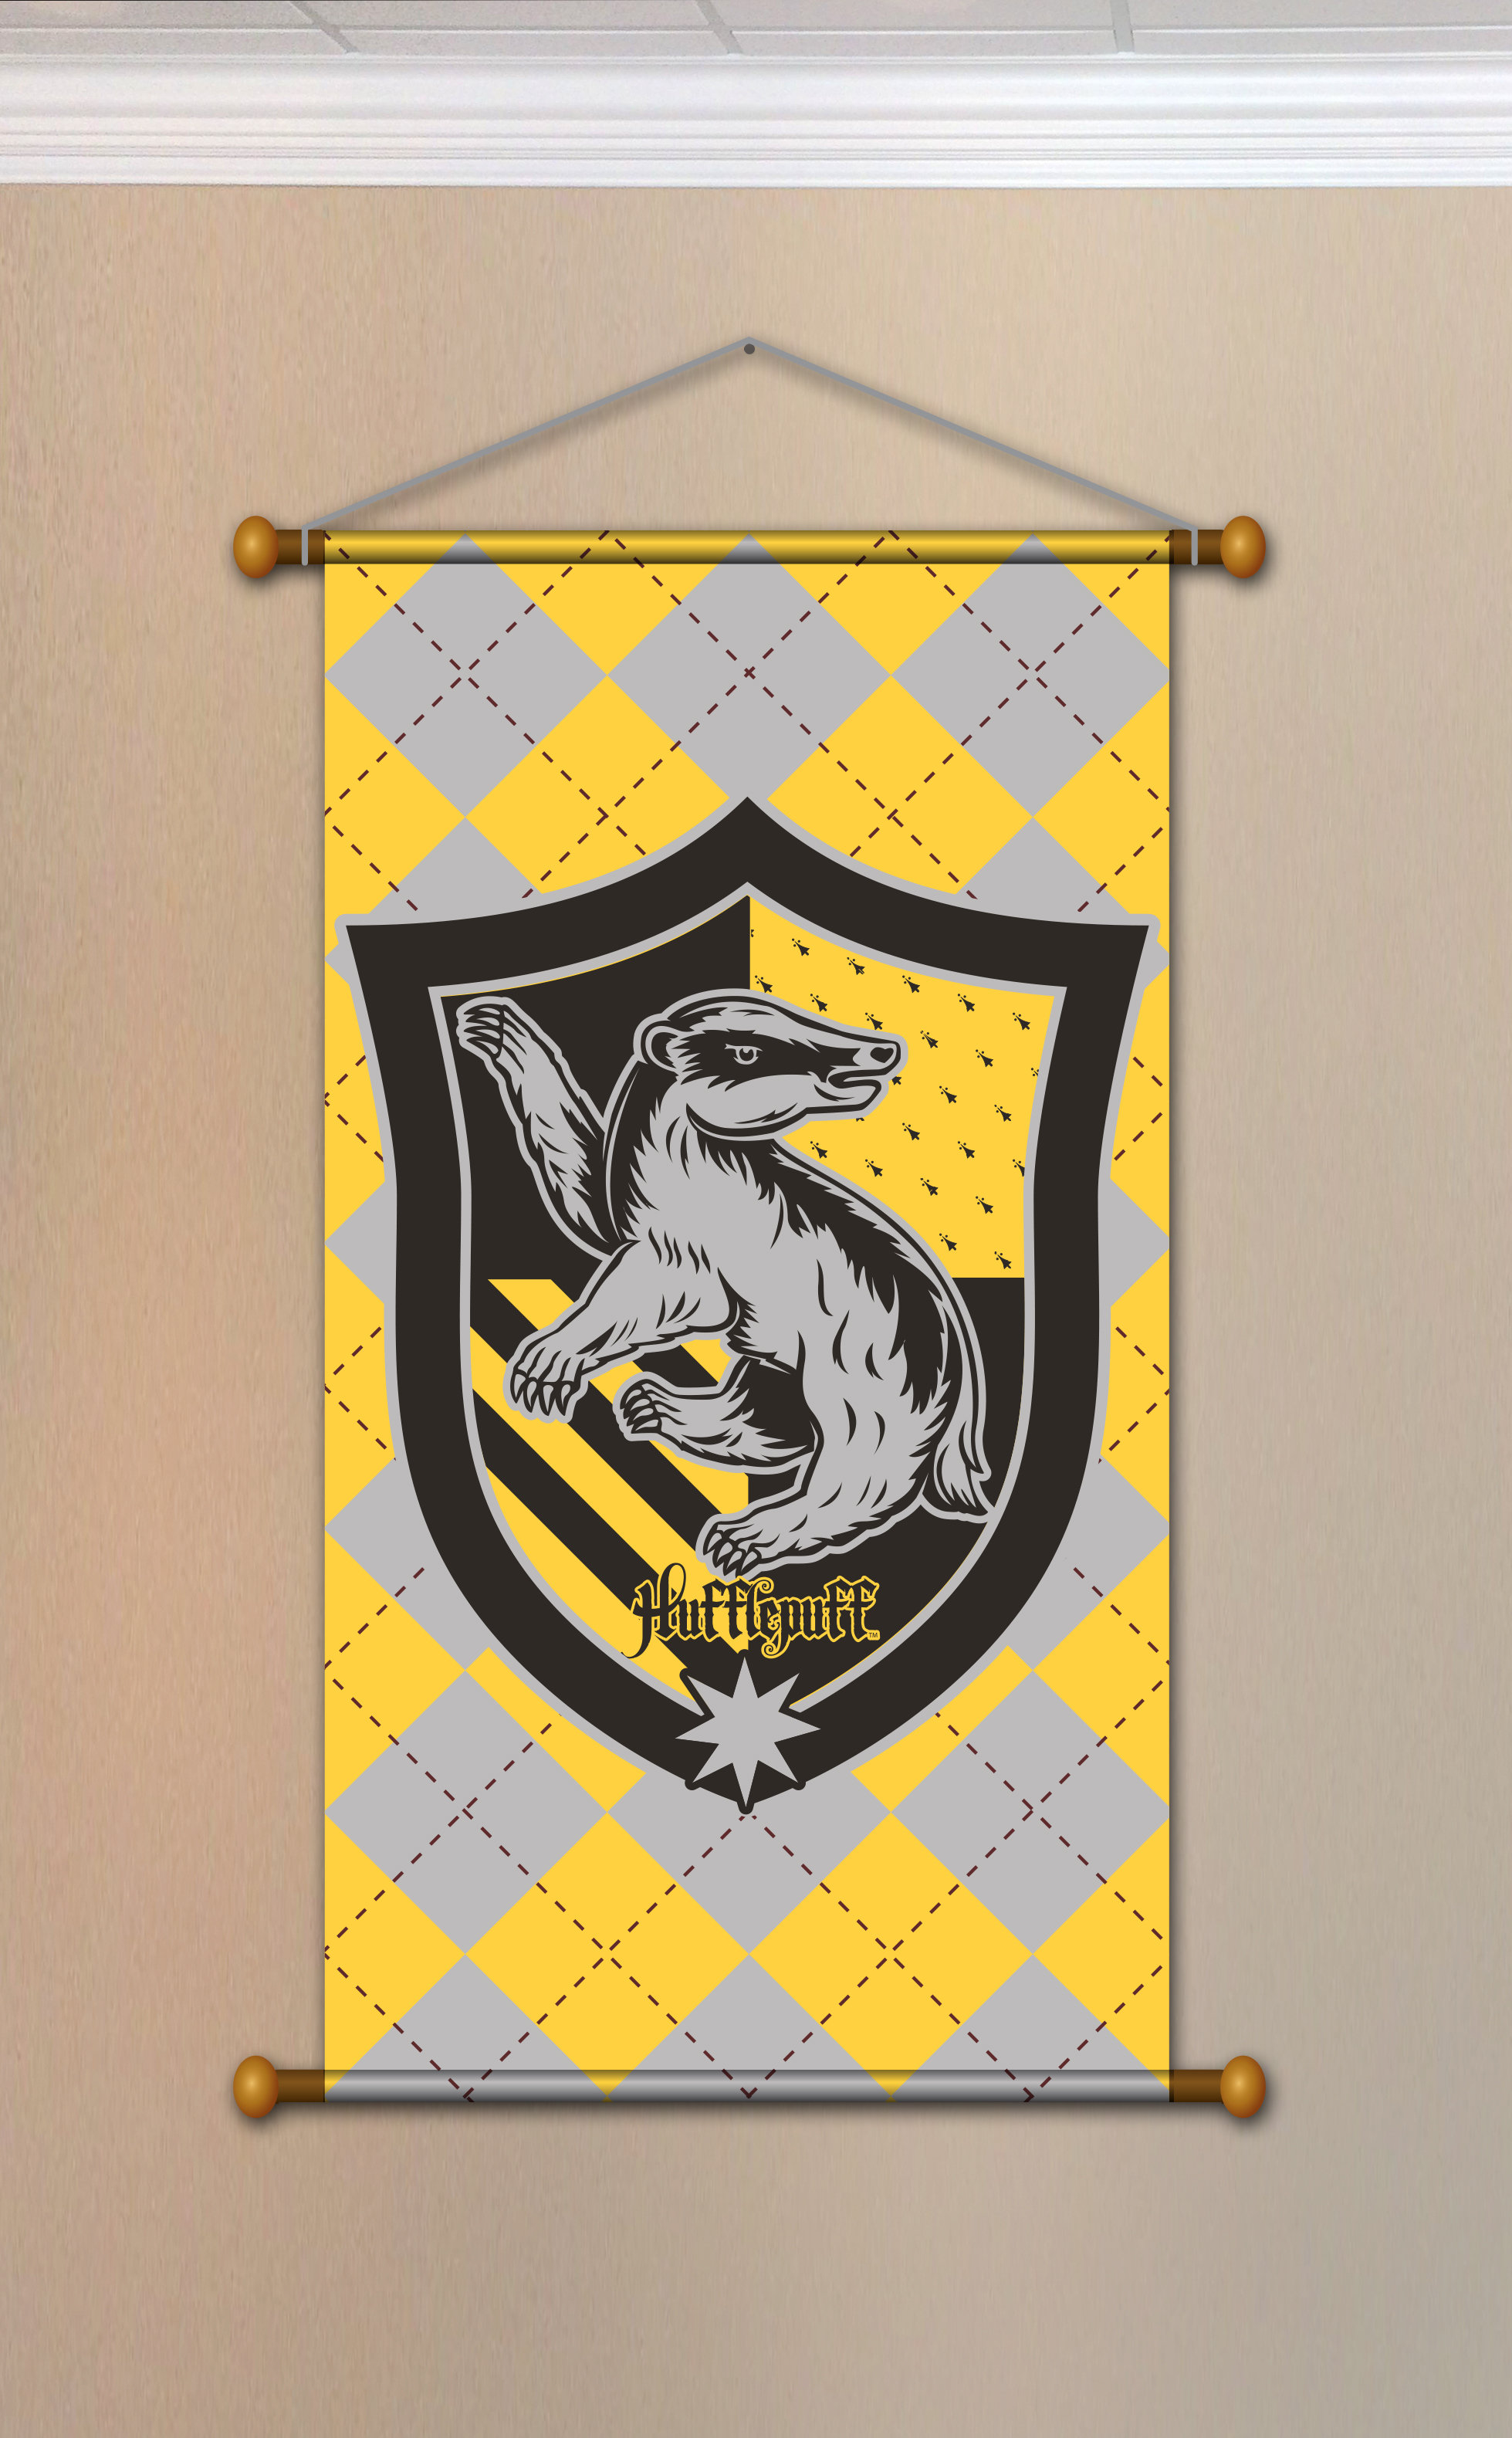 Gryffindor Slytherin Ravenclaw House Flag Banner Drape